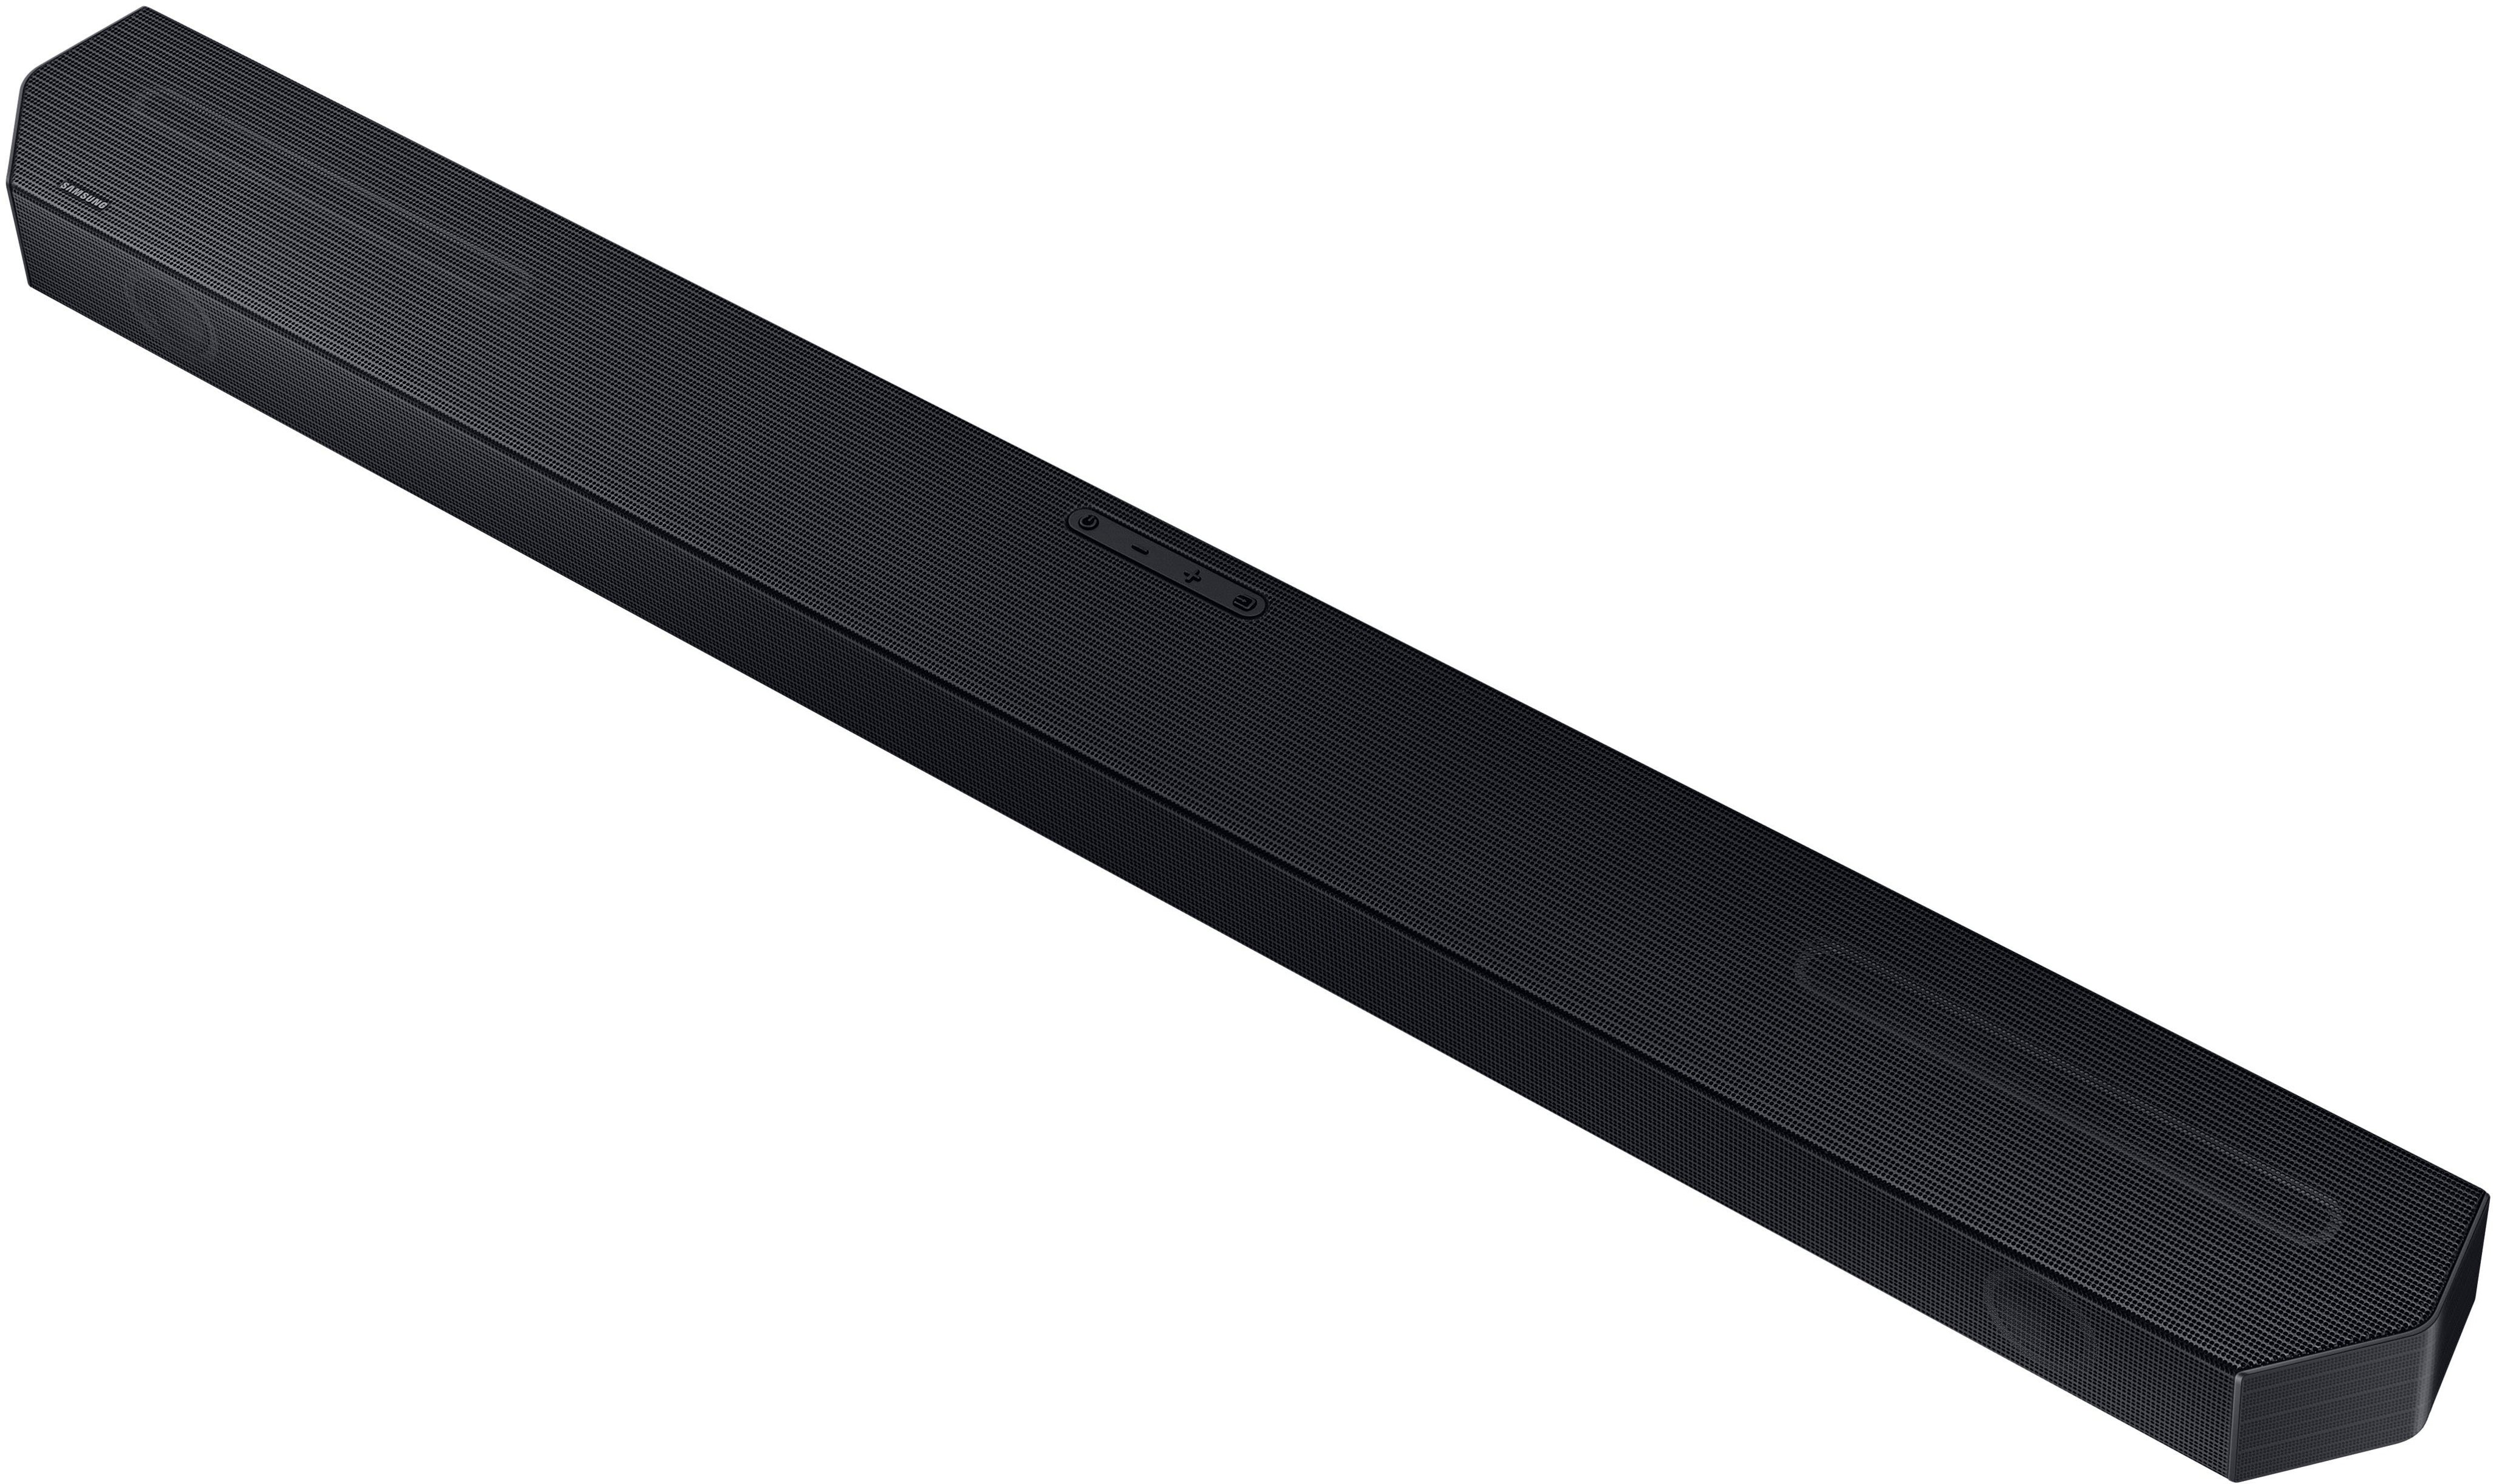 Buy Titan w/Q-Symphony - Soundbar Dolby Best 3.1.2 ch Q-series Atmos Black HW-Q600C Samsung